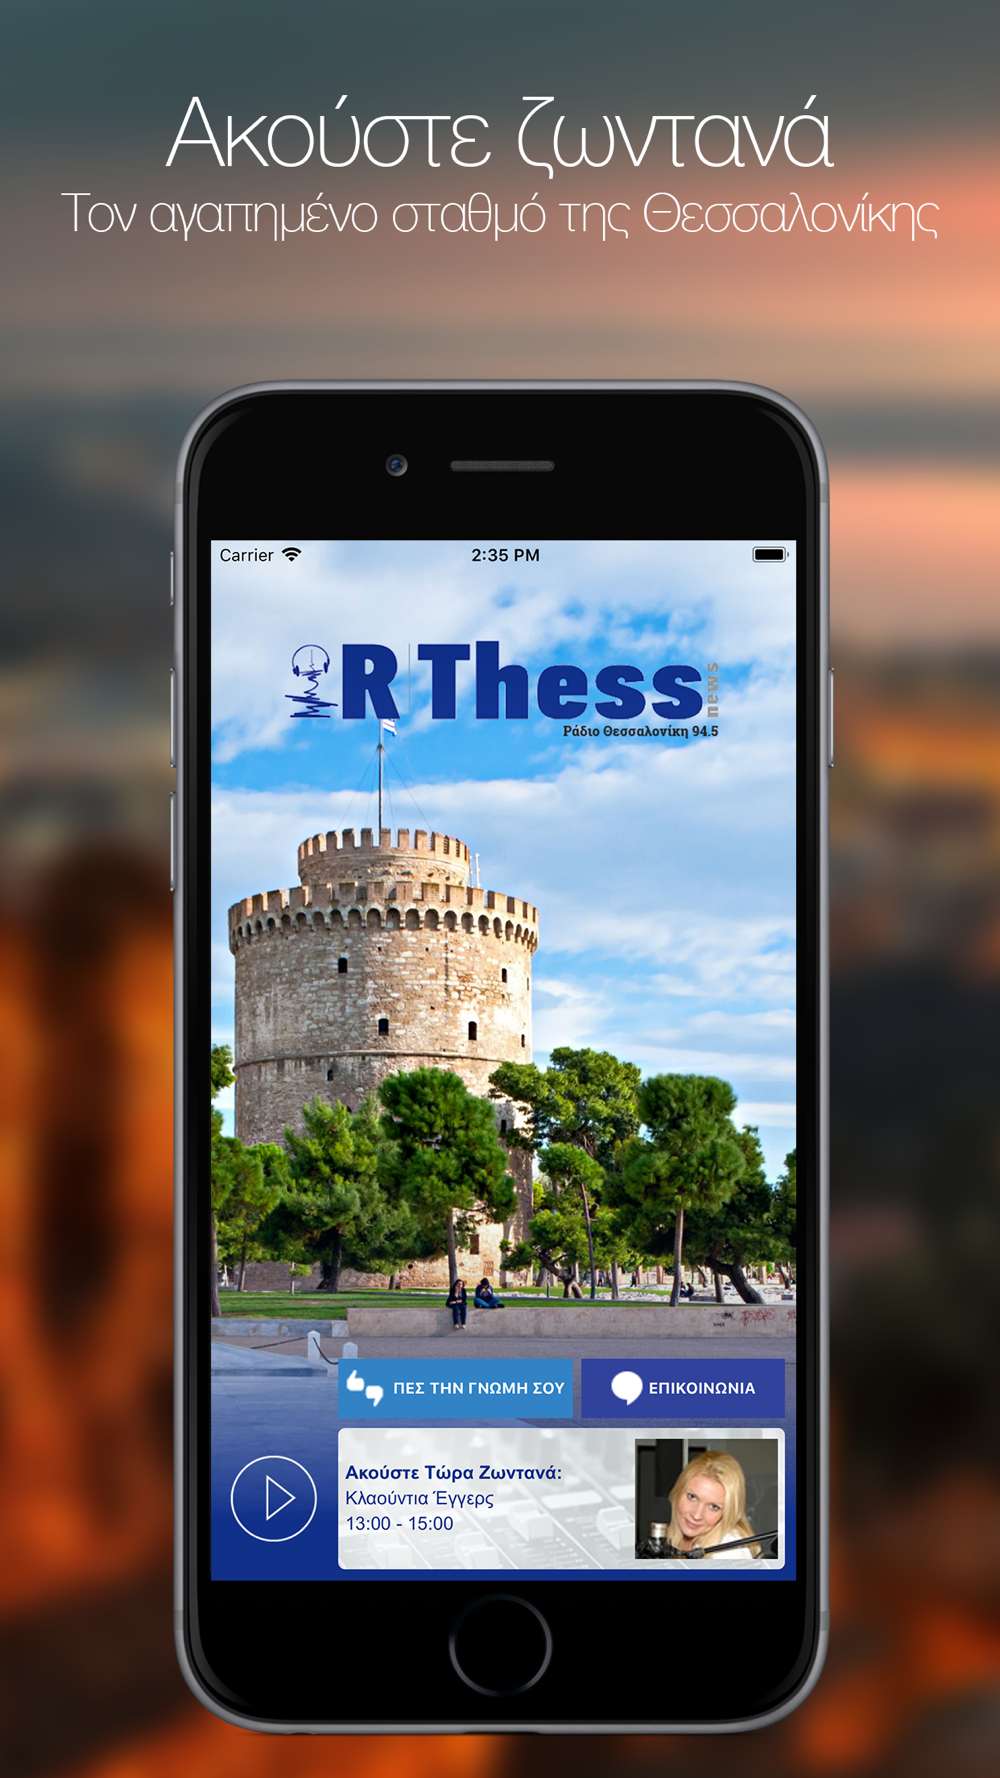 Ράδιο Θεσσαλονίκη Free Download App for iPhone - STEPrimo.com